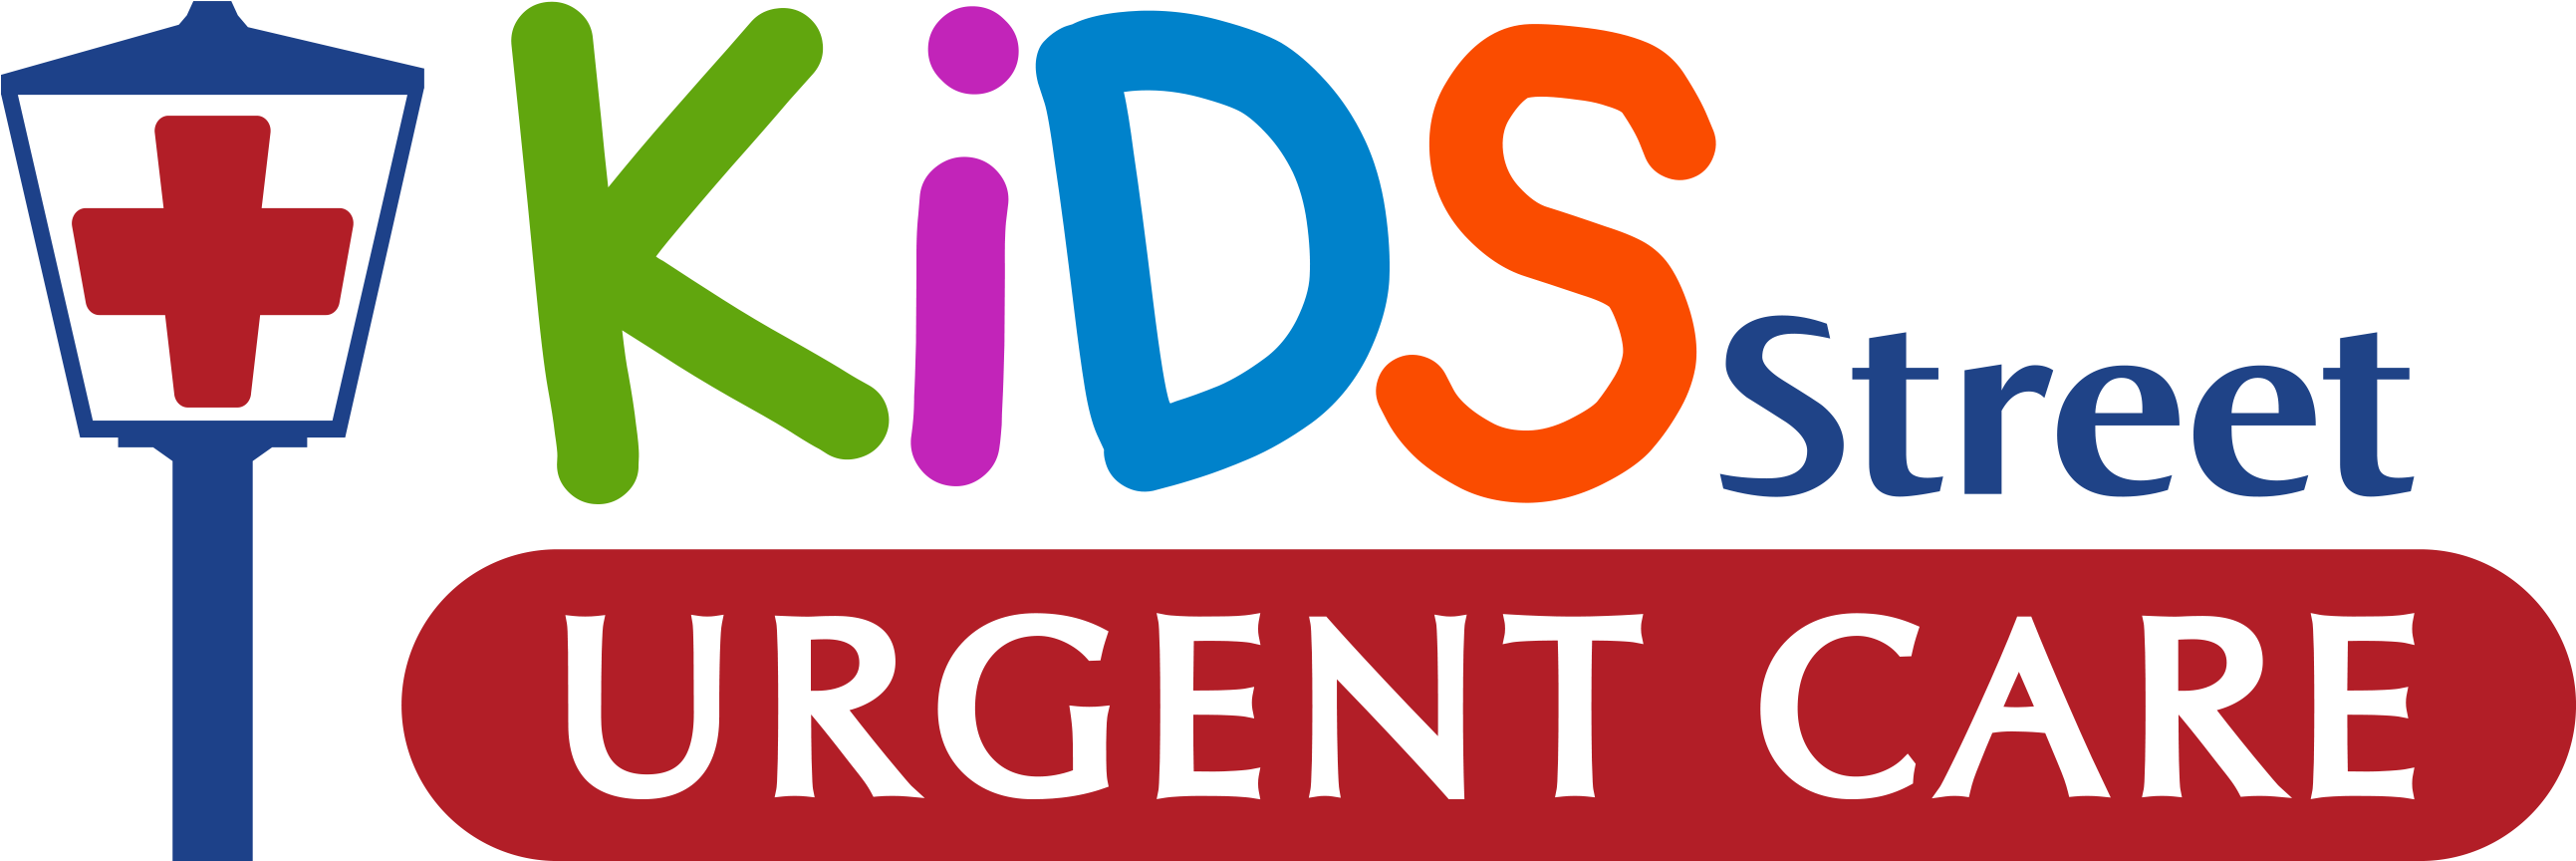 Kidsstreet Urgent Care (2700x900)